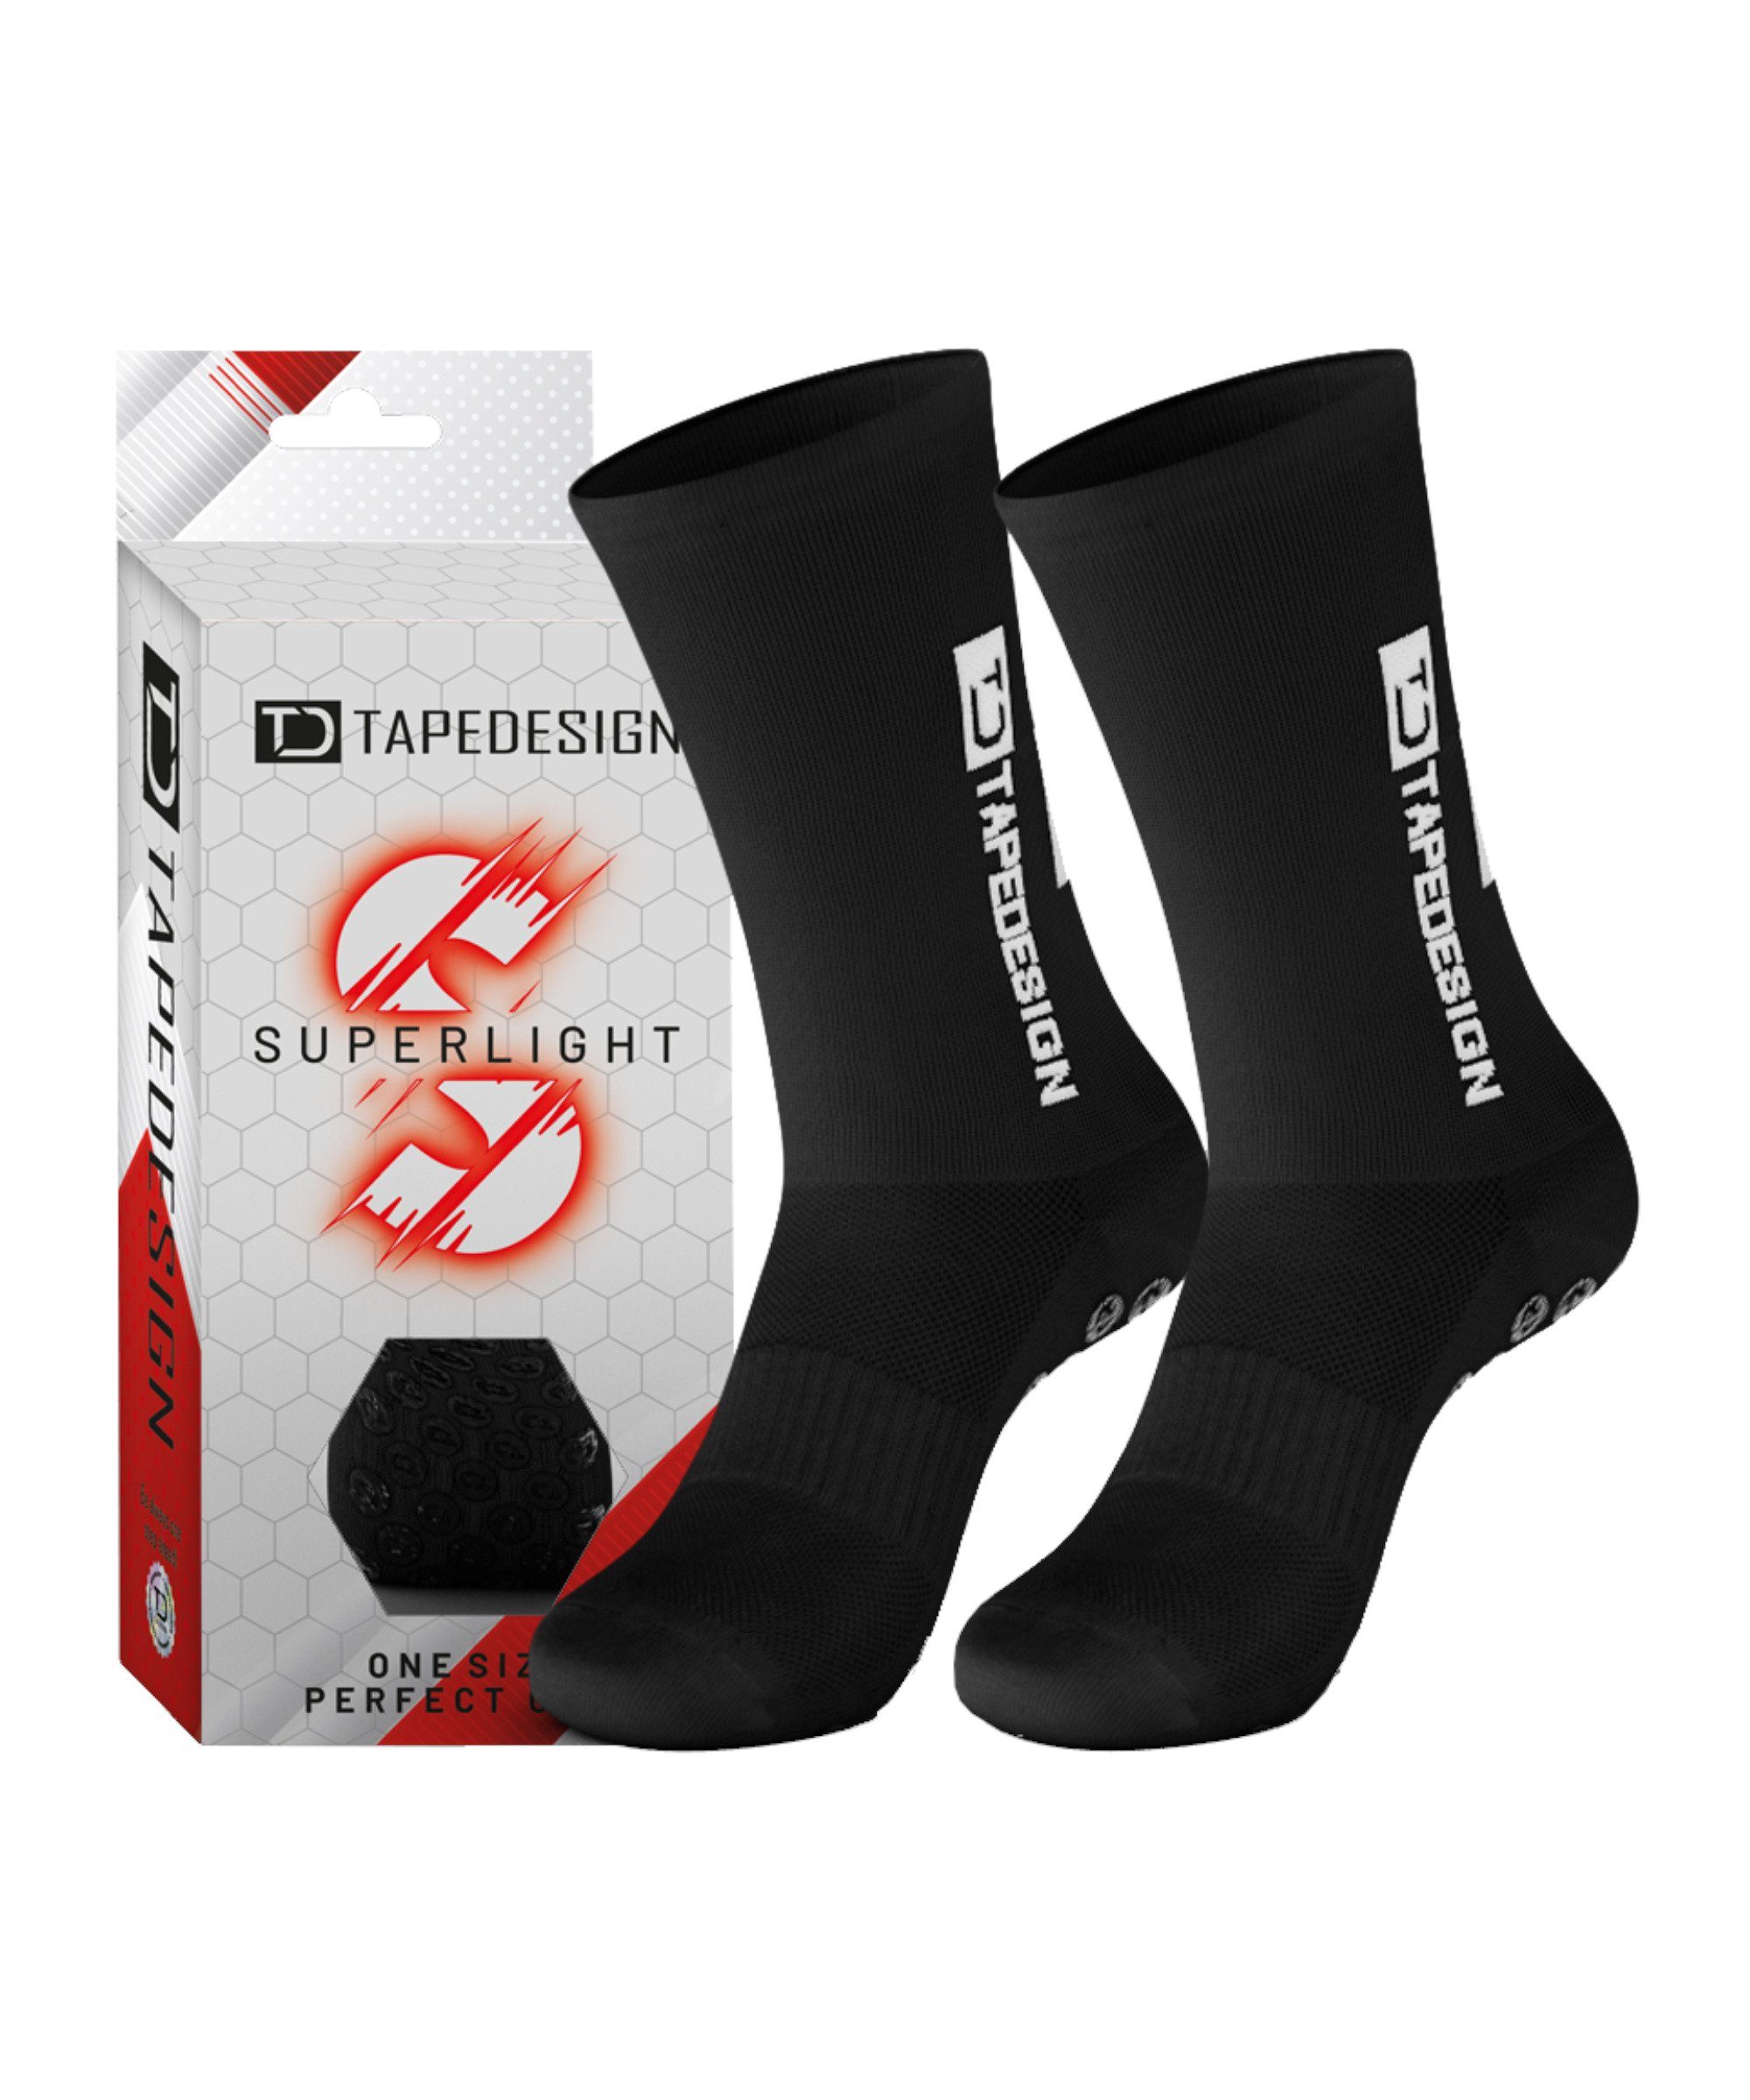 Tapedesign Sportsocken Gripsocks Superlight Socken default schwarz